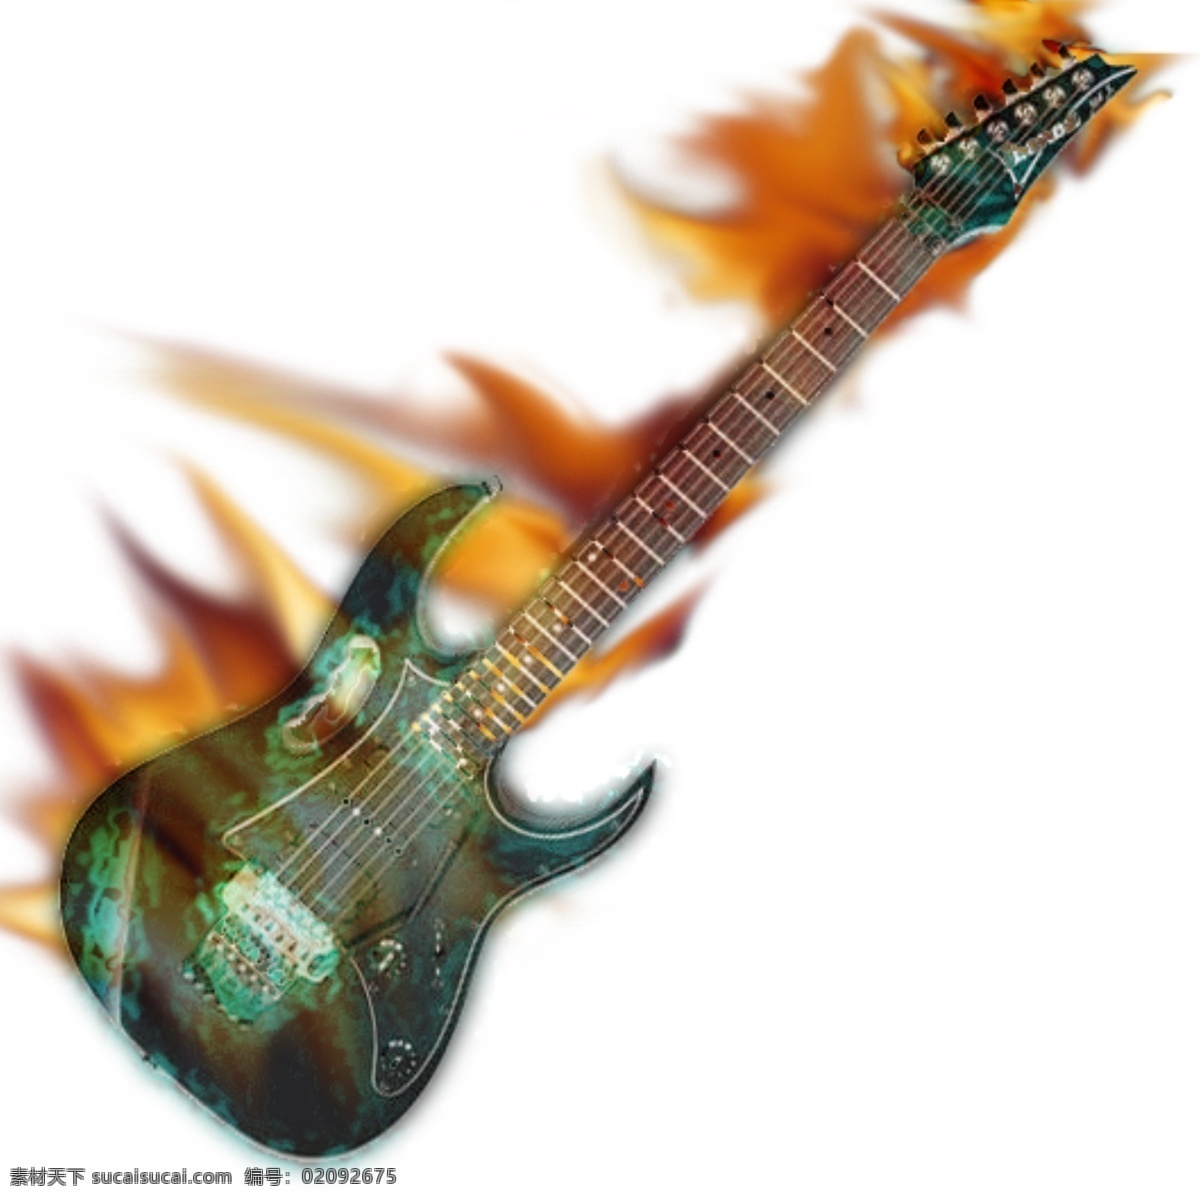 百事可乐 表演 广告设计模板 火焰 吉他 节目单 燃烧 吉他素材下载 吉他模板下载 很酷 源文件 宣传海报 宣传单 彩页 dm